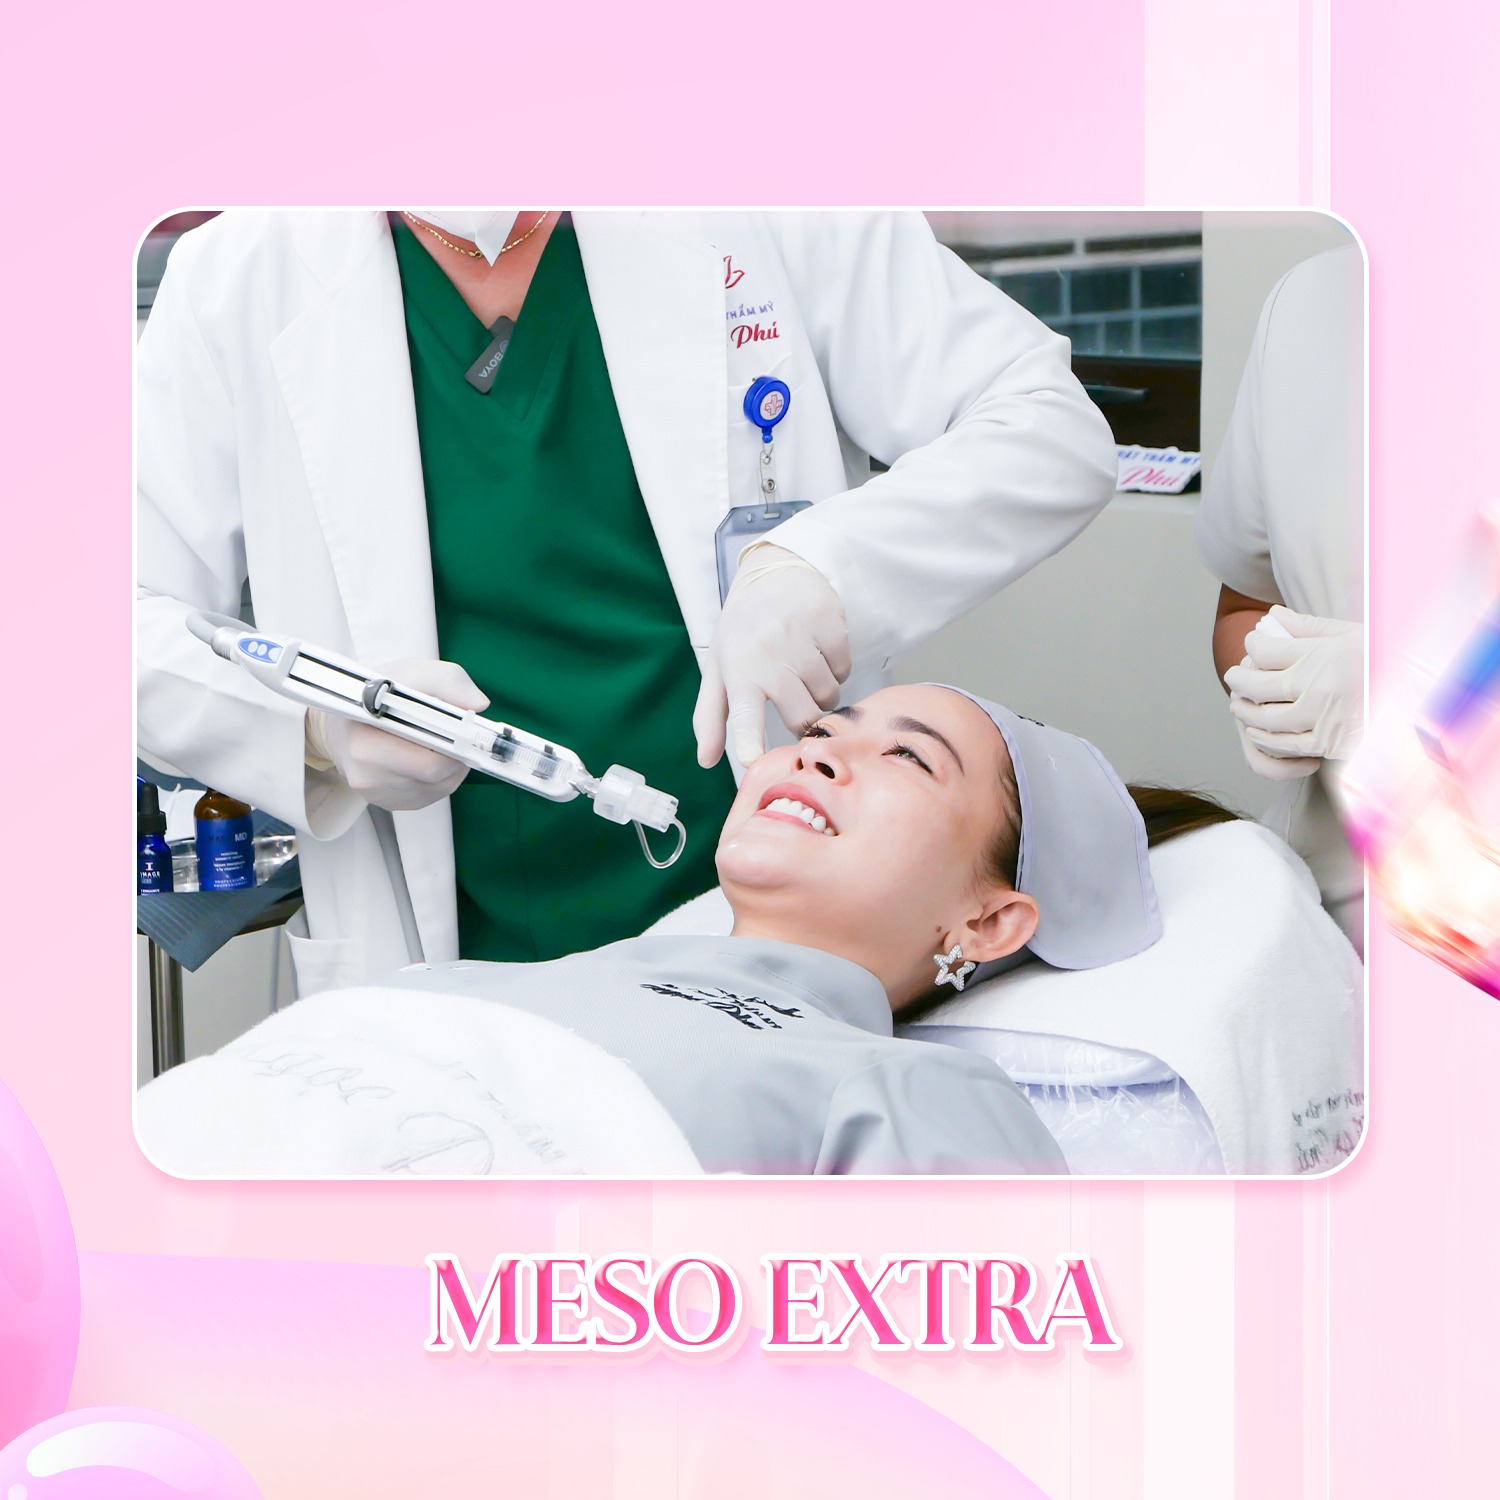 Cấy meso extra, hay Mesotherapy, đang trở thành một xu hướng làm đẹp được ưa chuộng nhờ khả năng cải thiện làn da một cách toàn diện và an toàn. 